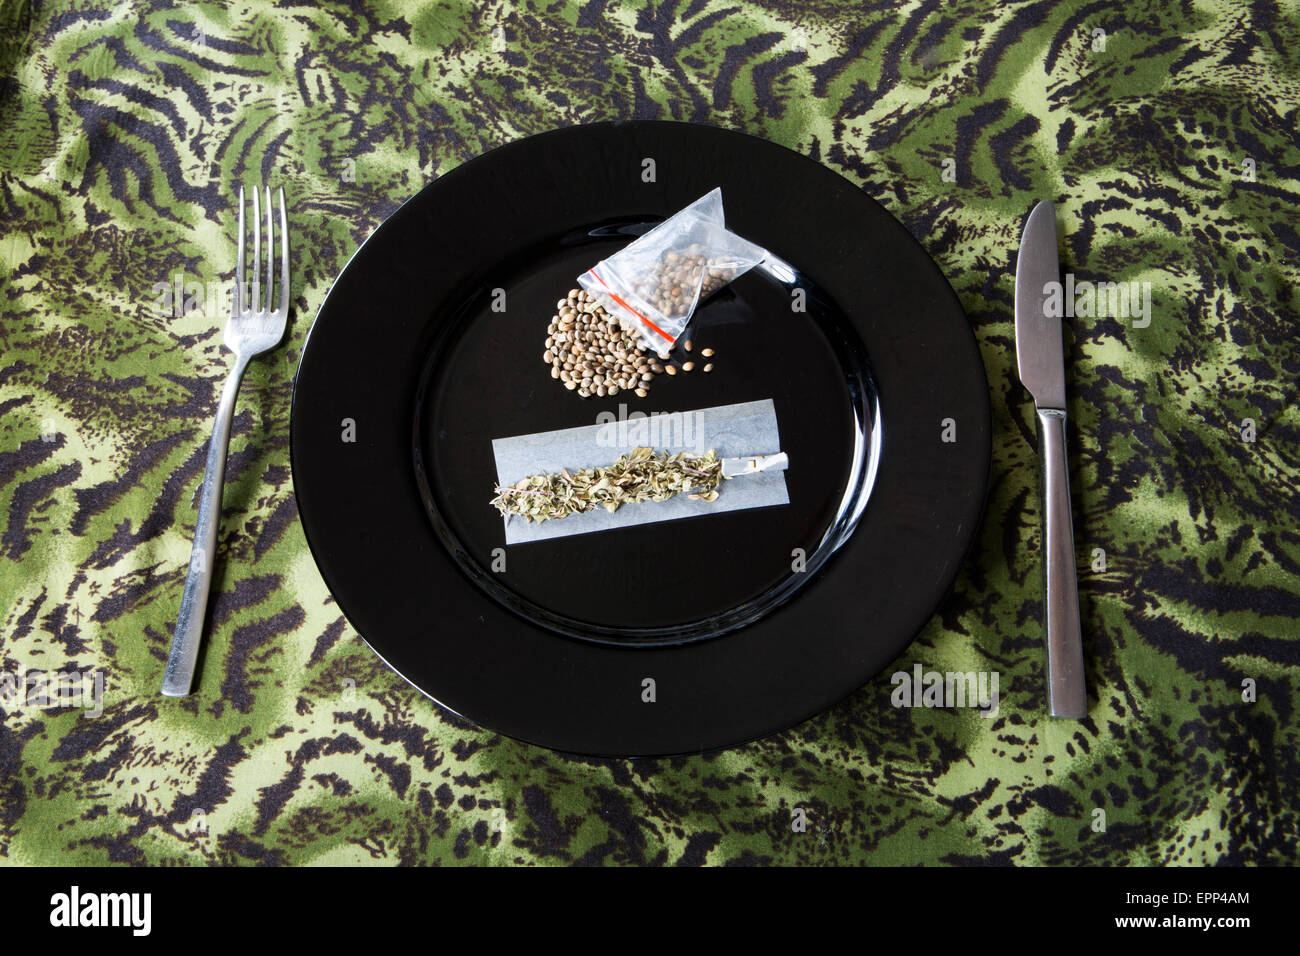 Humoristische Darstellung eines Hanfs inspiriert Mahlzeit mit Hanfsamen, Oregano, Rizlas. Stockfoto